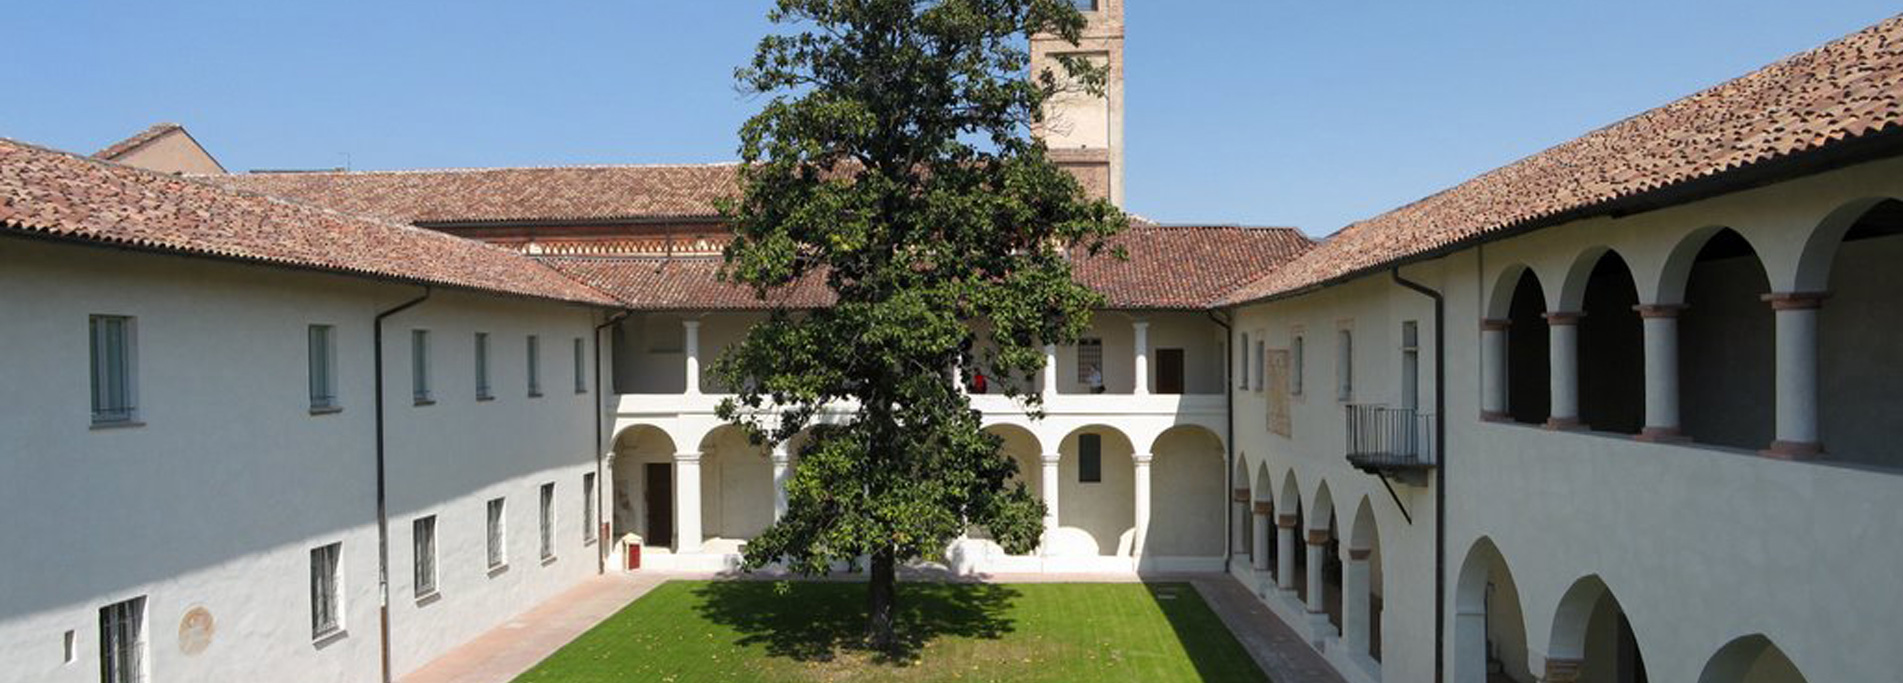 Ex Convento dell